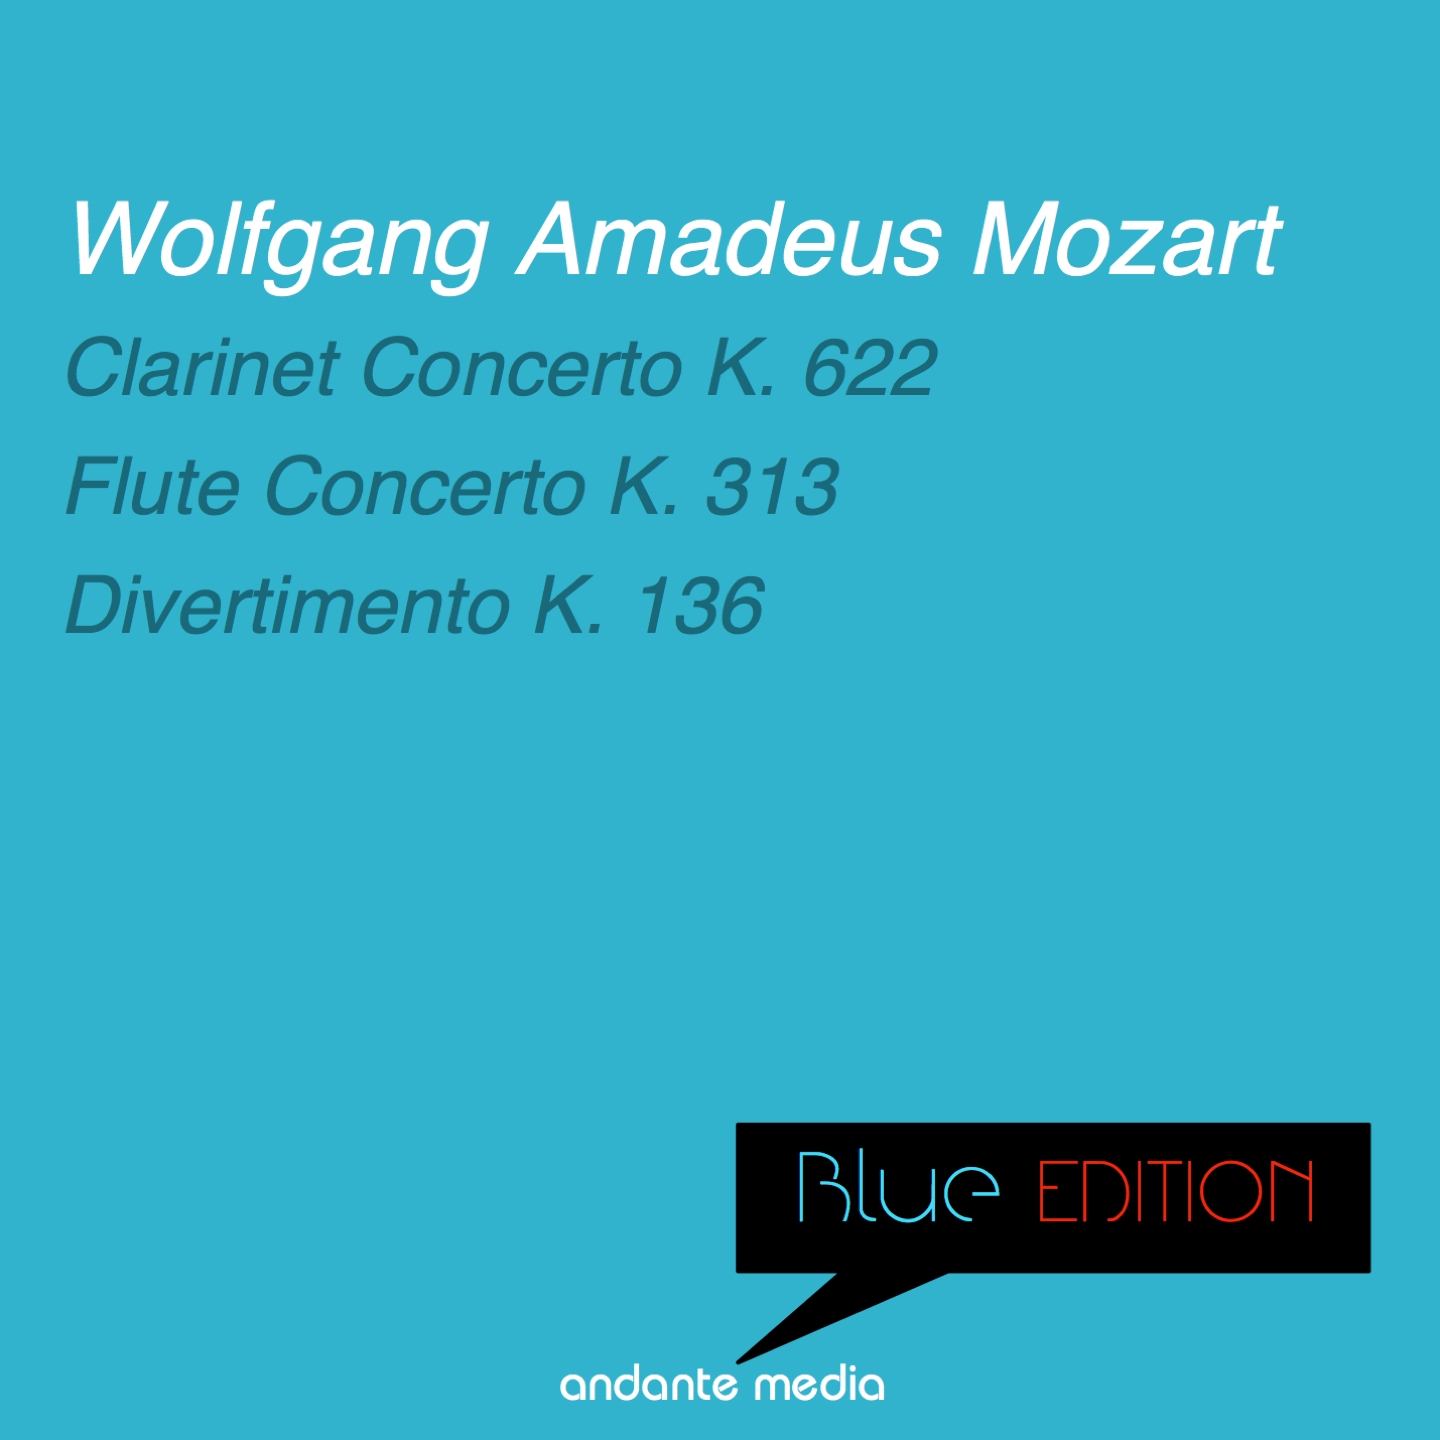 Flute Concerto in G Major, K. 313: I. Allegro maestoso